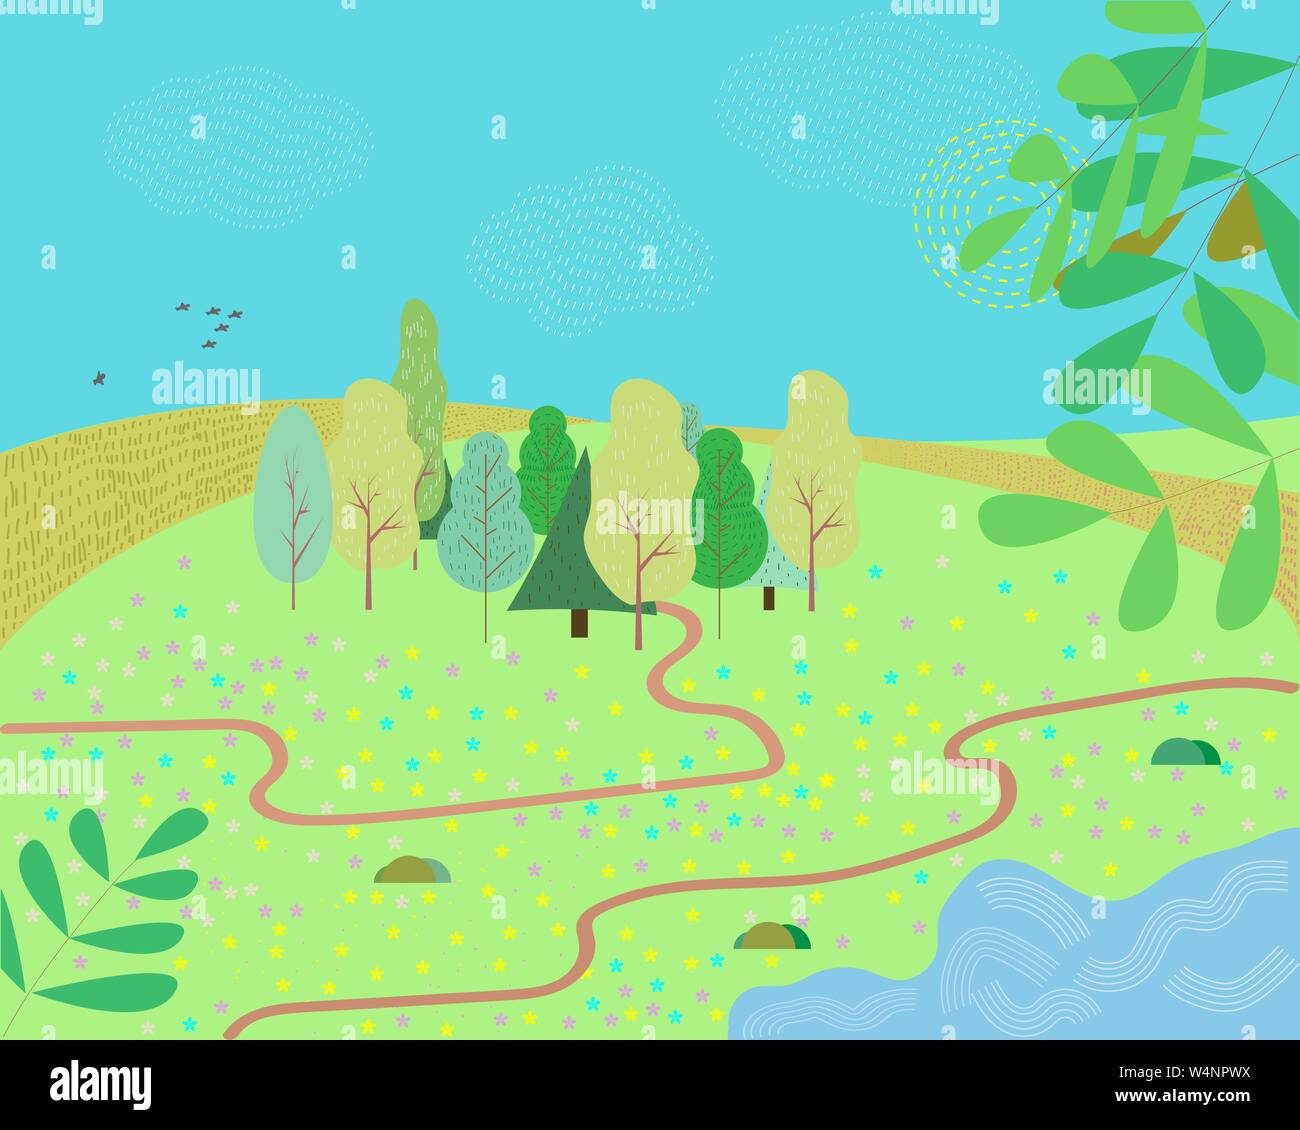 Abbildung: ein Cartoon Sommer oder Frühling Jahreszeit Land Landschaft, mit Road Trail in Richtung Horizont. Vector Illustration. Stock Vektor